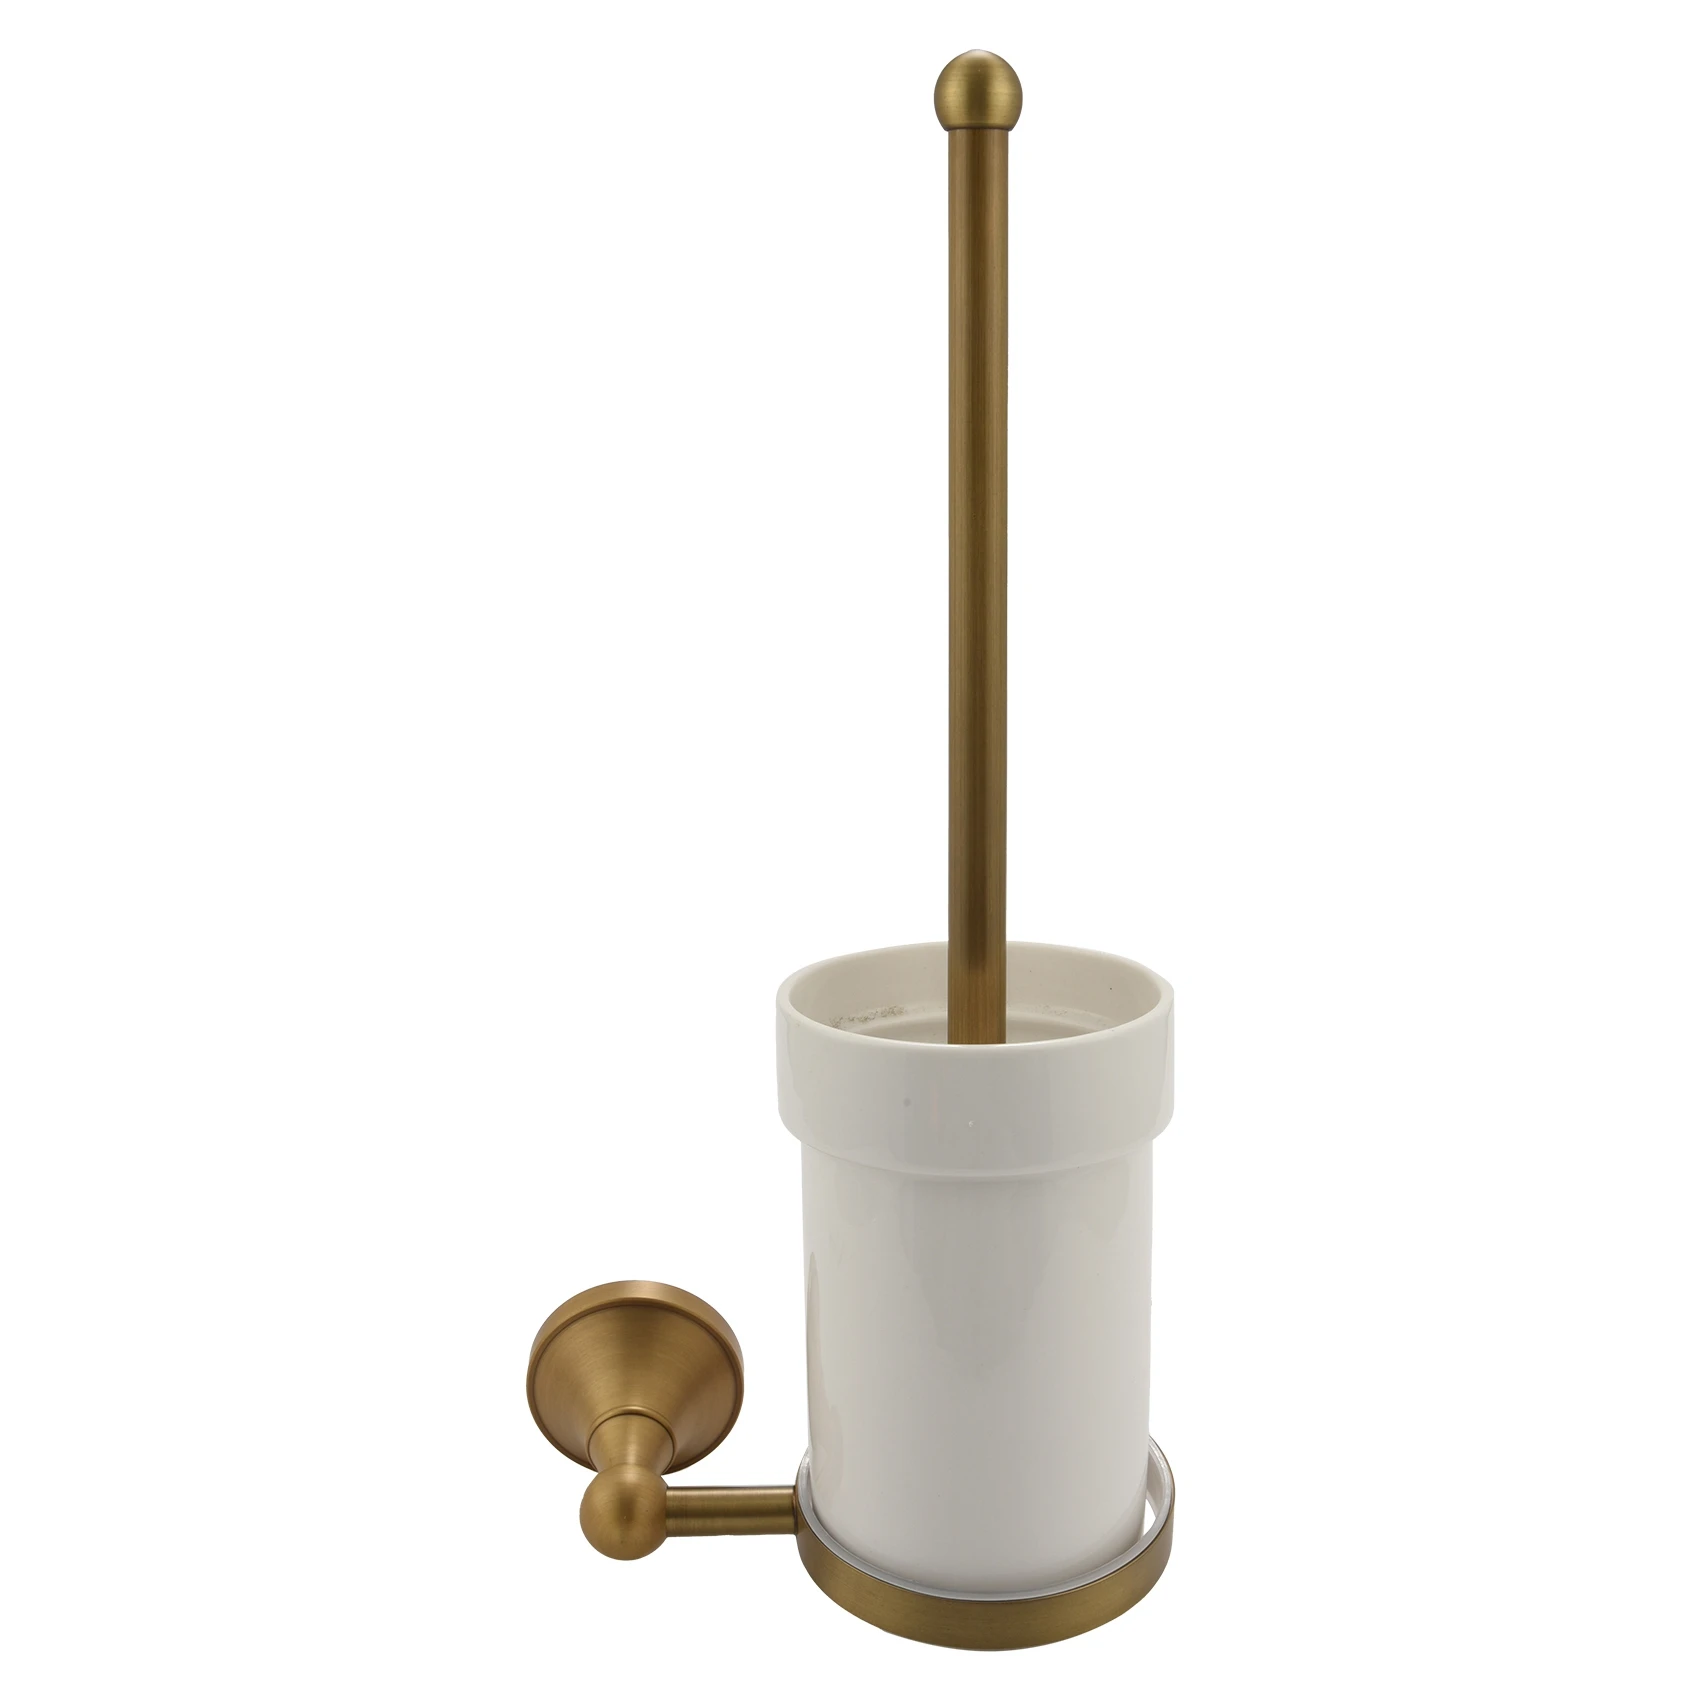  Антикварная латунь Набор туалетных щеток для ванной комнаты Держатель щетки с керамической чашкой - 0